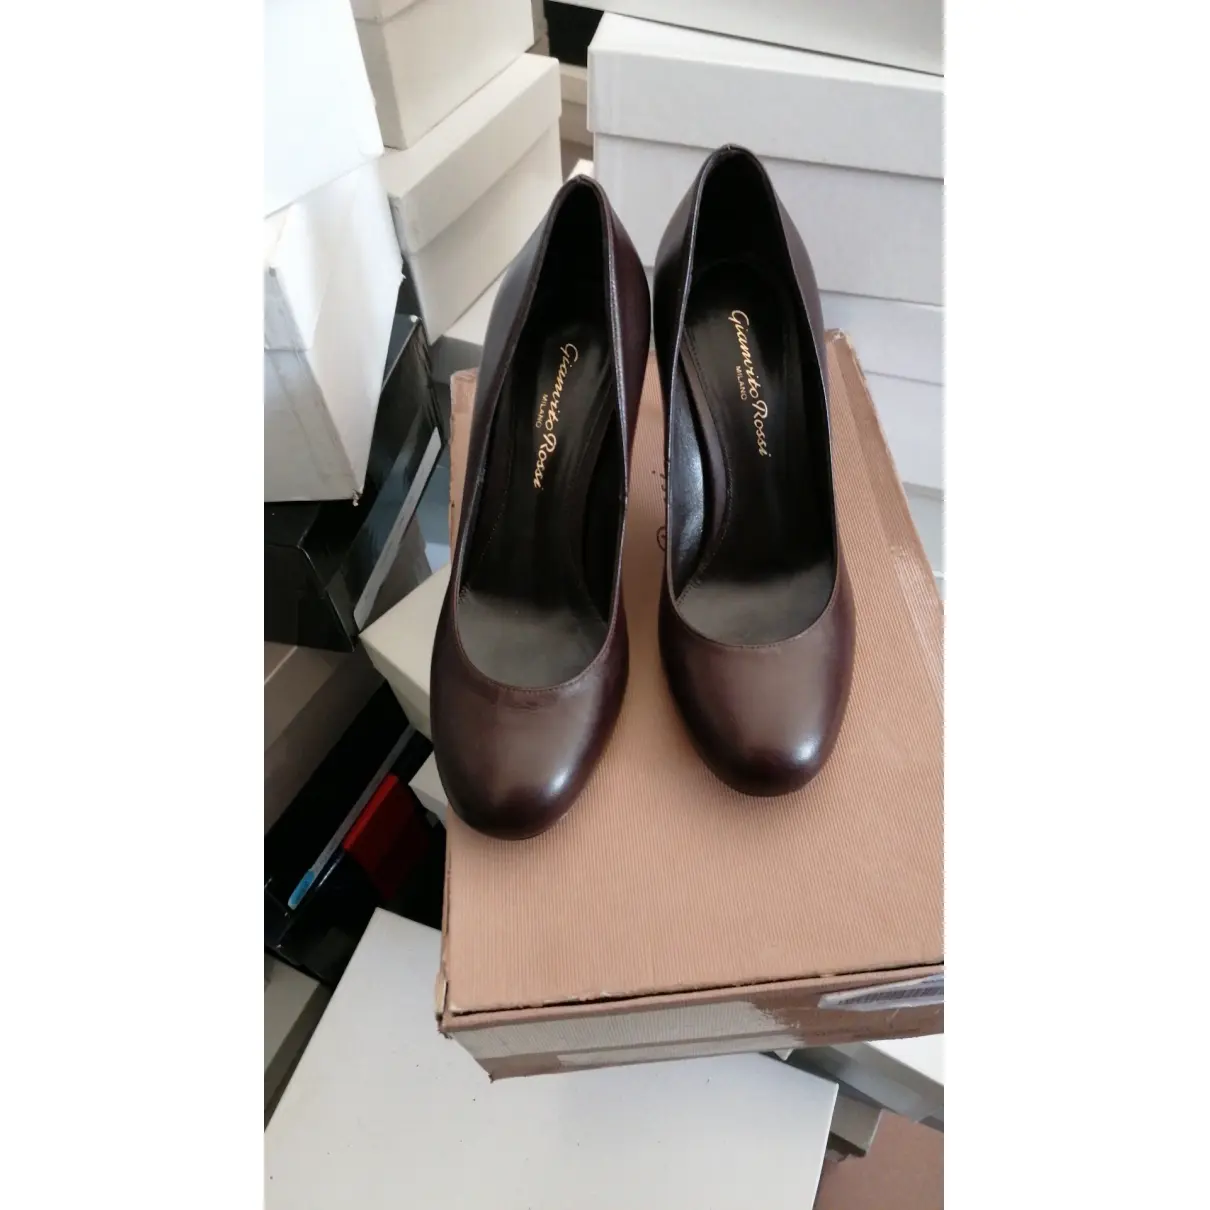 Buy Gianvito Rossi Leather heels online